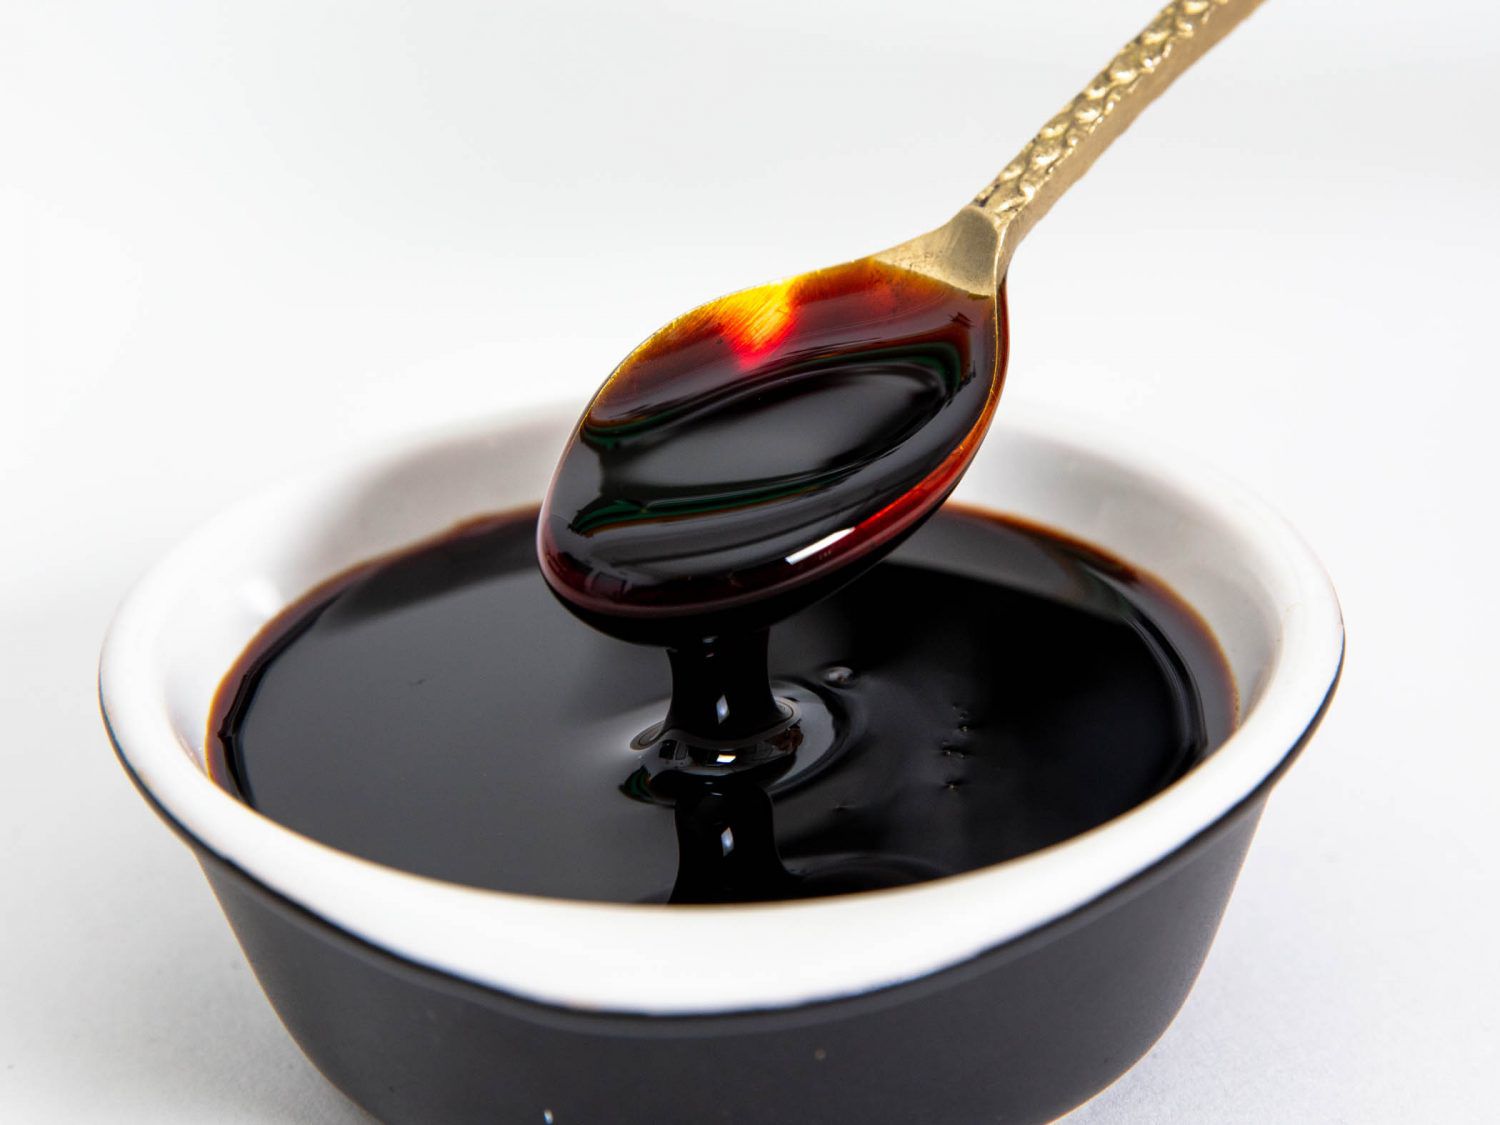 一小勺解除一勺甜酱油(印尼甜酱油)从一个碗里